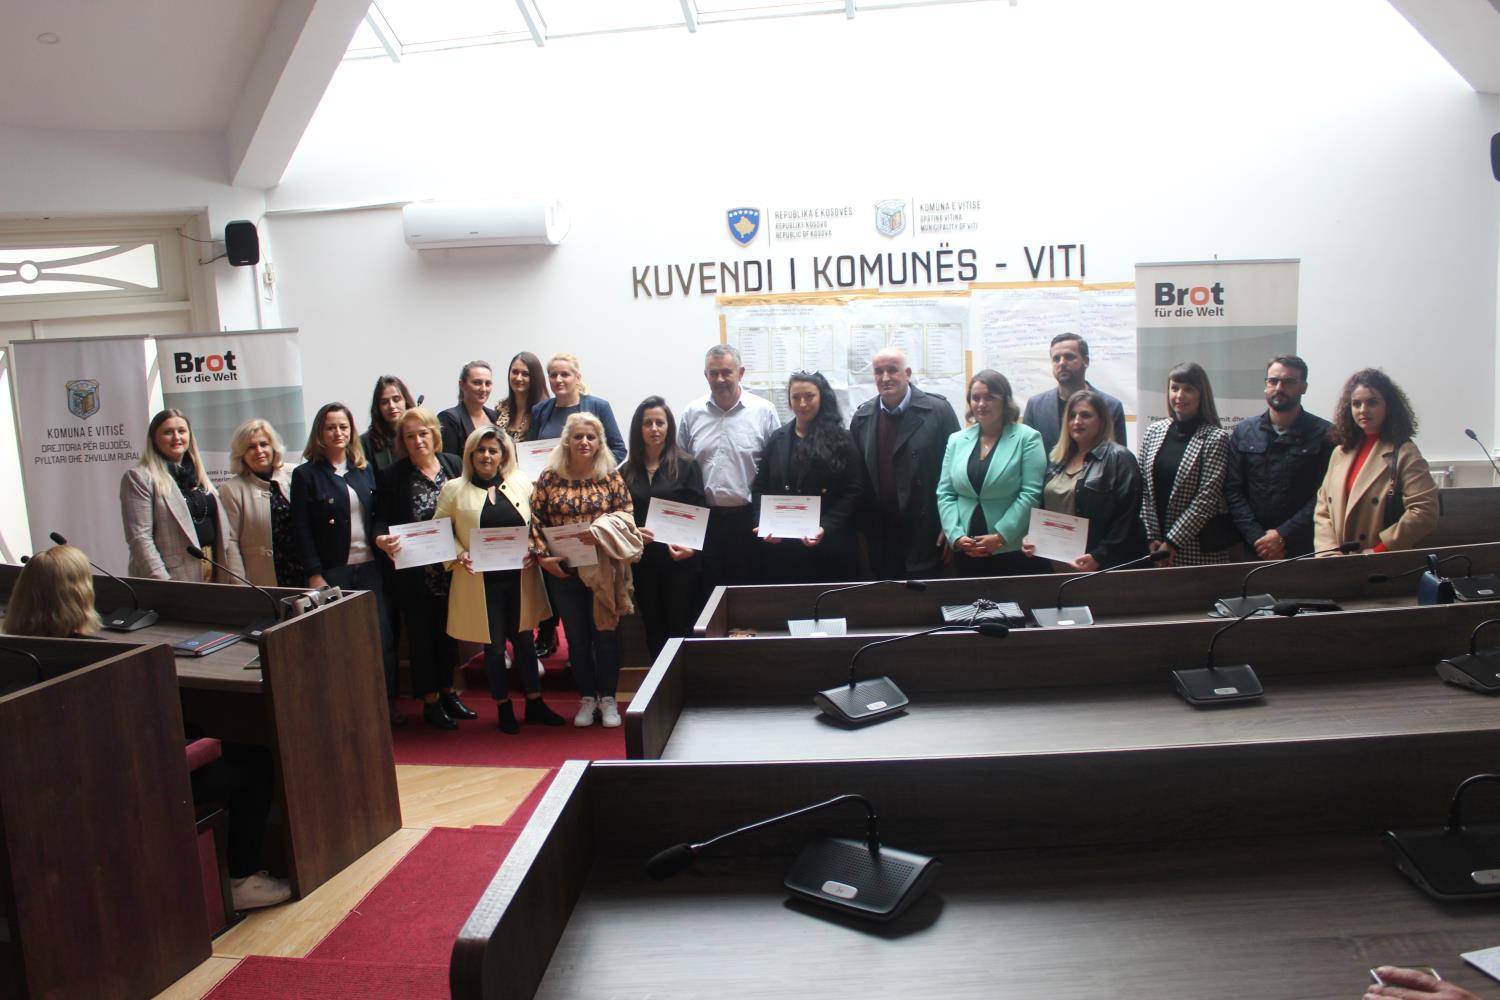 IADK çertifikon kandidatet nga Komuna e Vitisë 